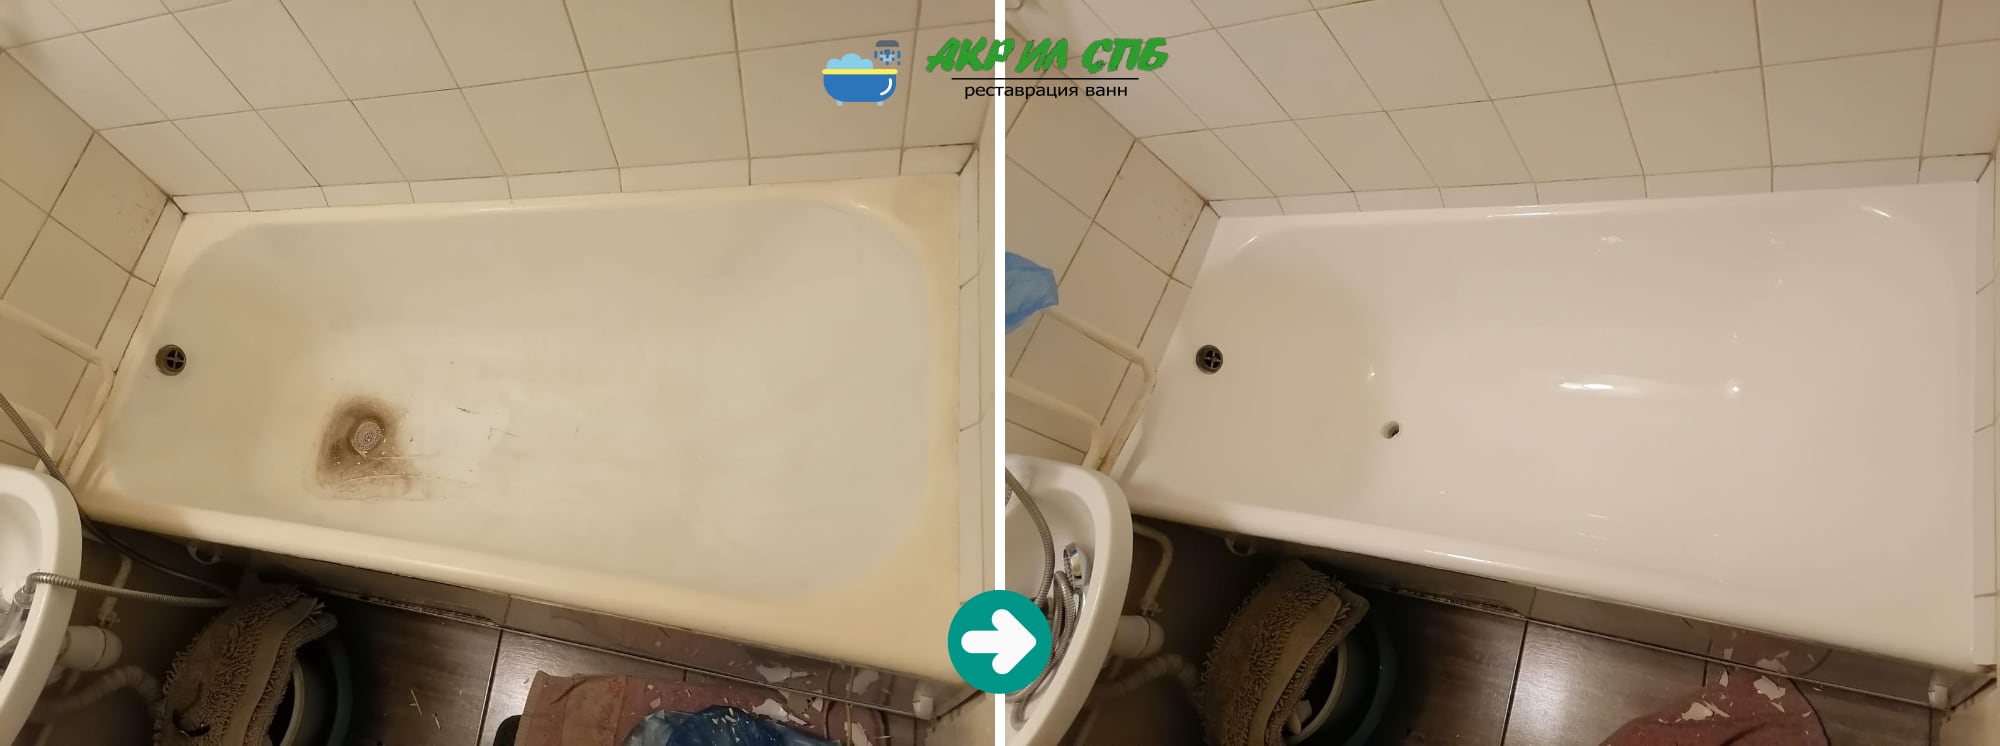 Реставрация в ванны в Мурино до и после